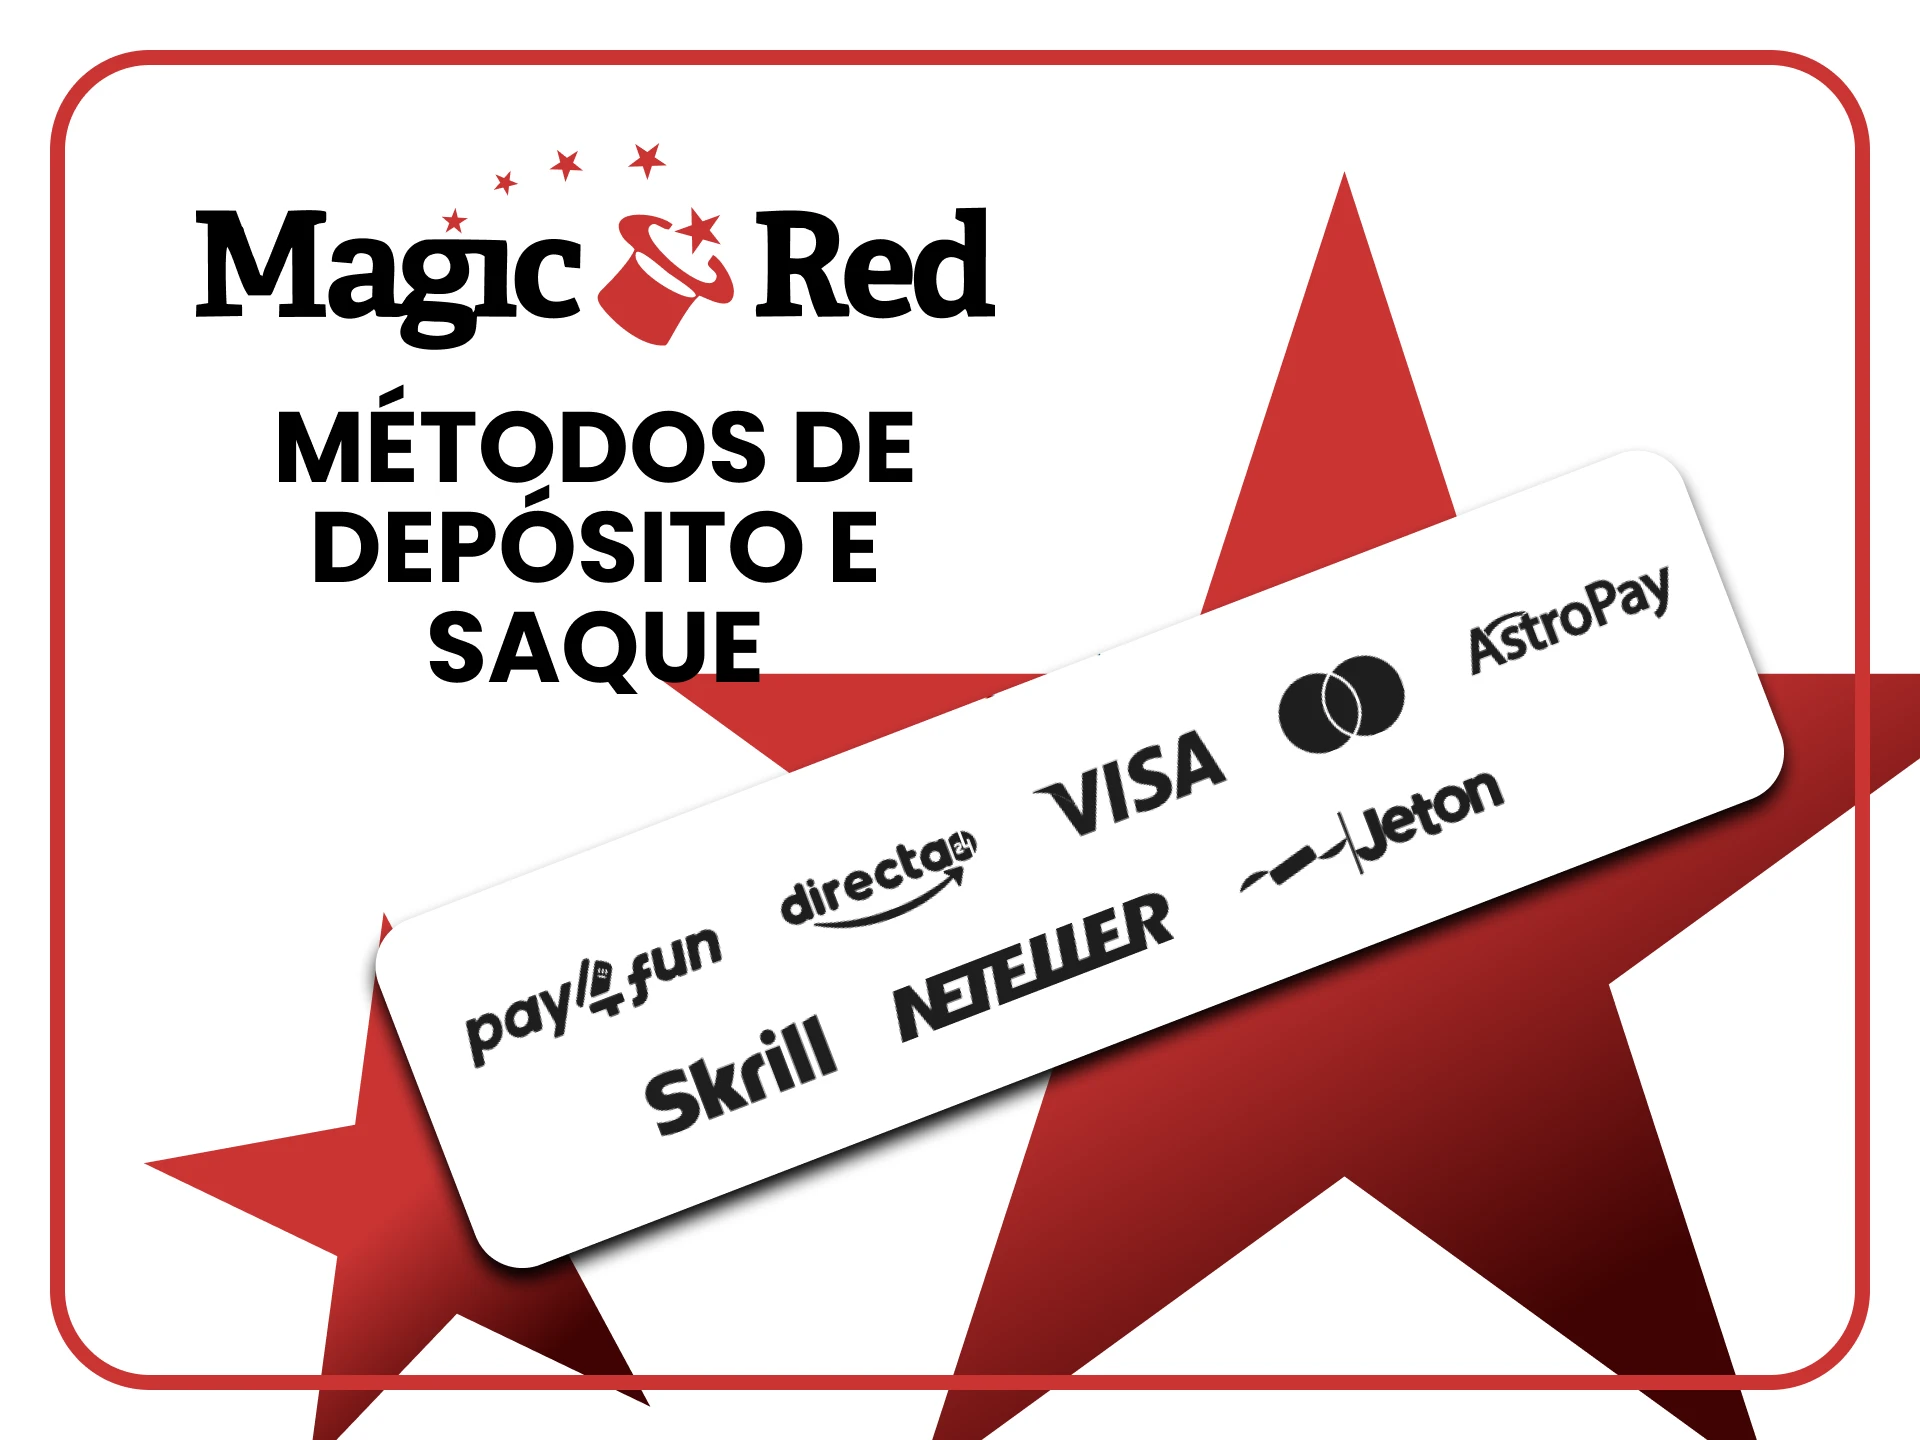 O Magic Red aceita vários métodos de depósito e saque no Brasil.